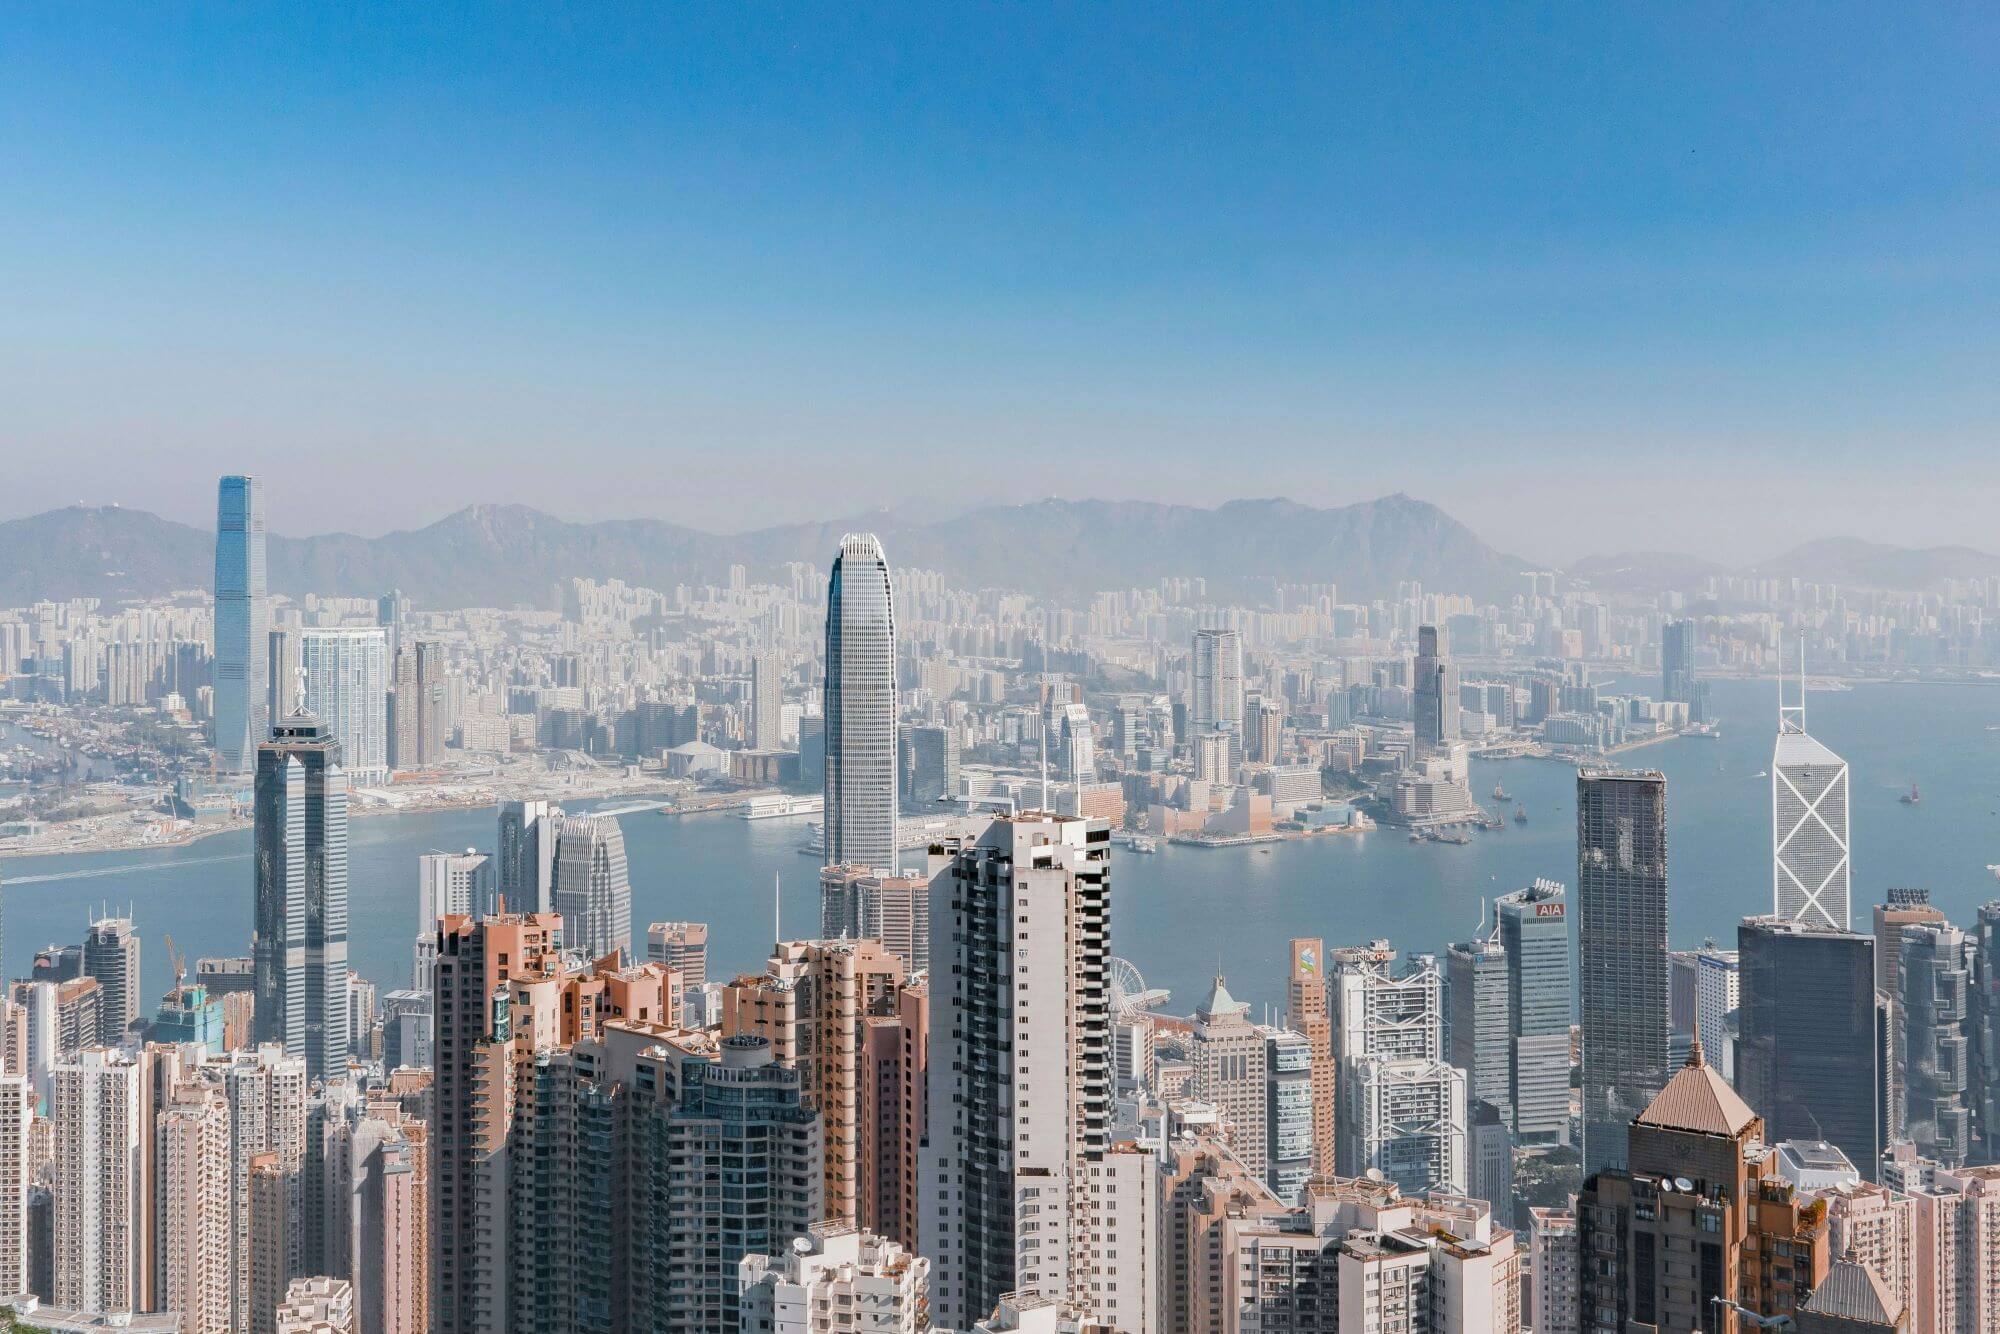 Chip Internacional Hong Kong: conheça as melhores empresas para se conectar no país